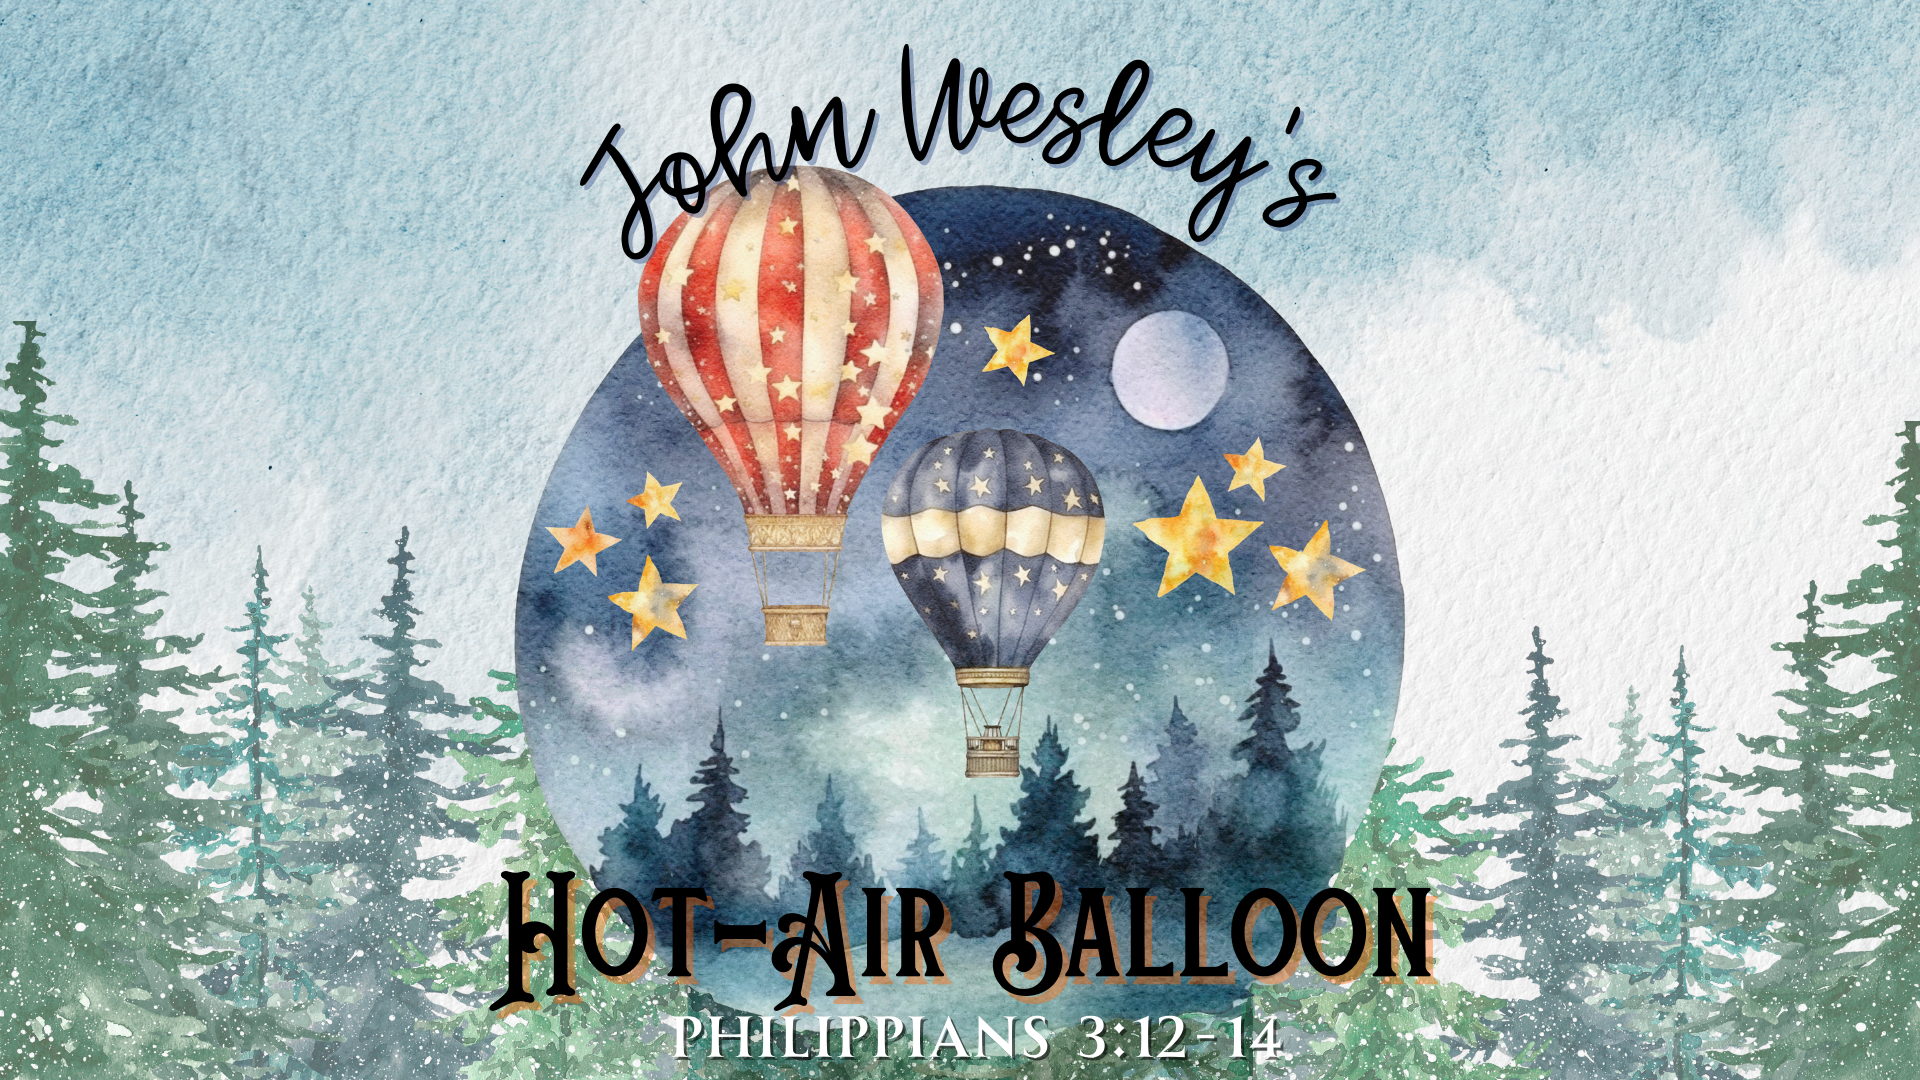 John Wesley’s Hot-Air Balloon